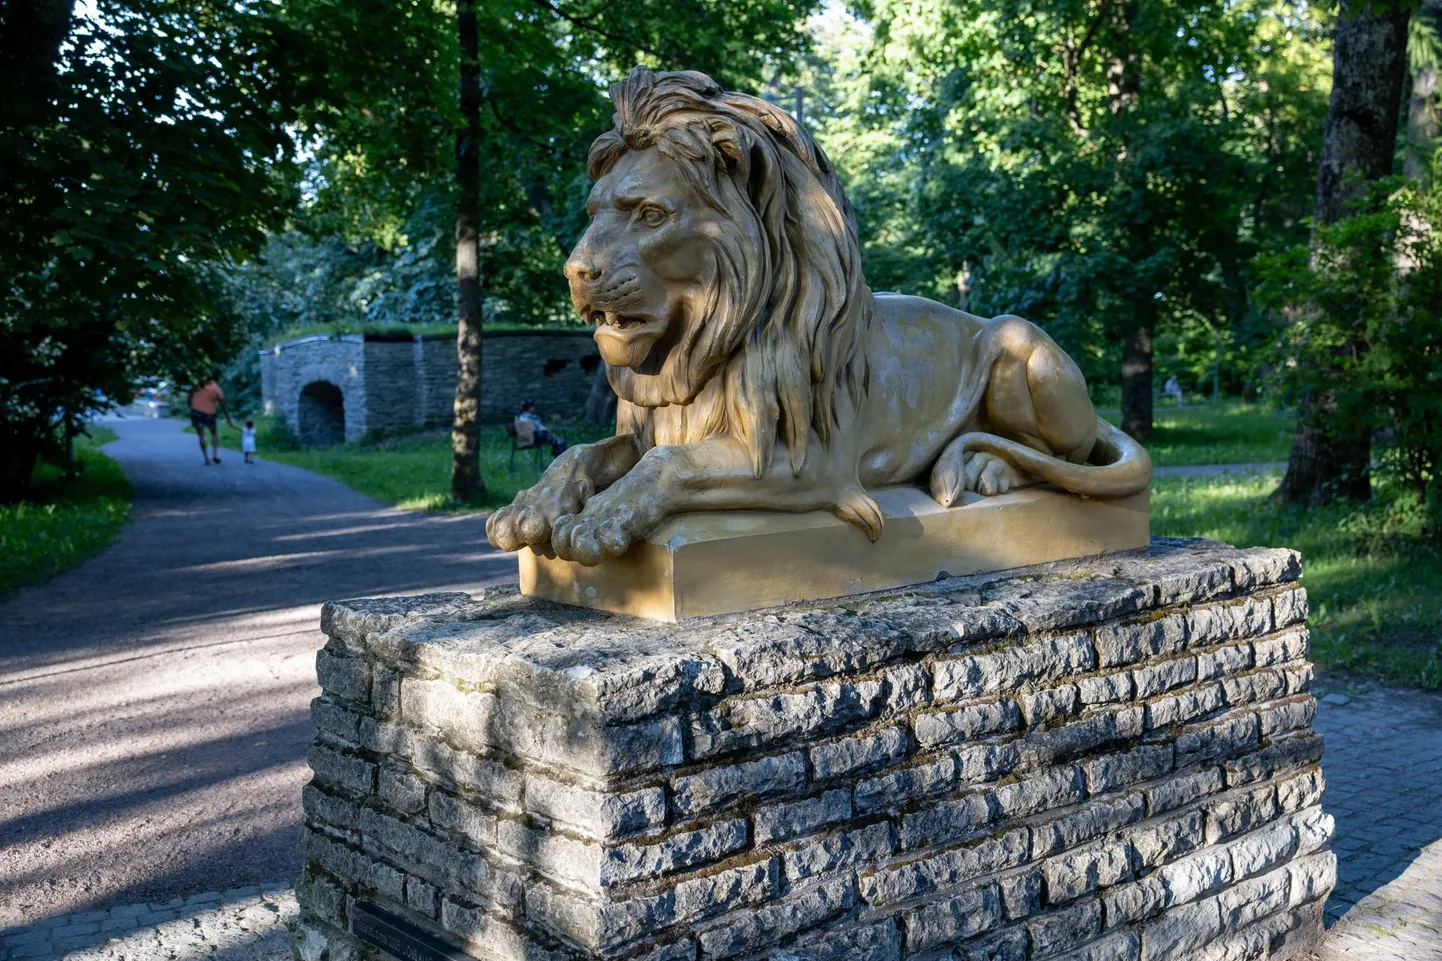 Löwenruh’ parki valvavad lõvikujud telliti 19. sajandi alguses Saksamaalt.